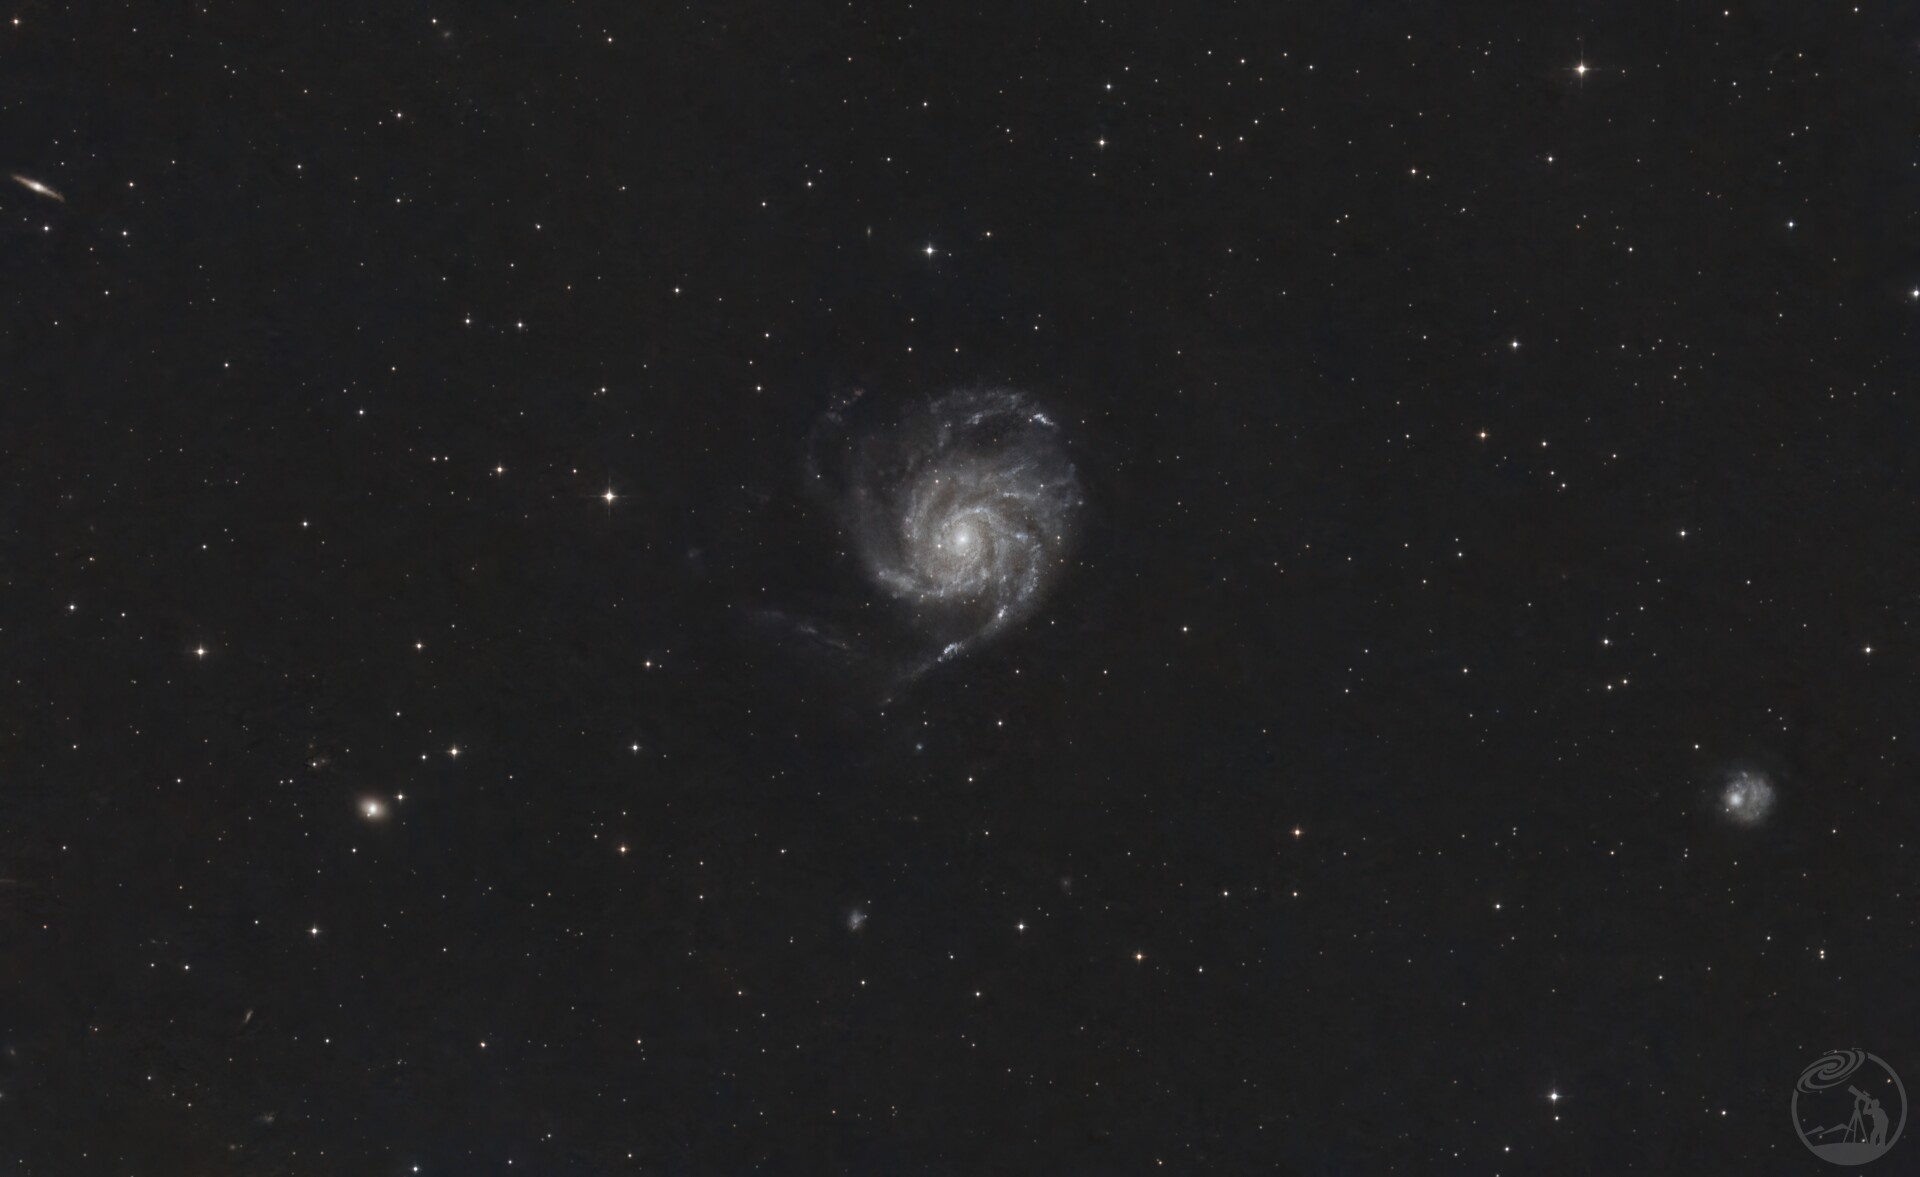 M101风车星系